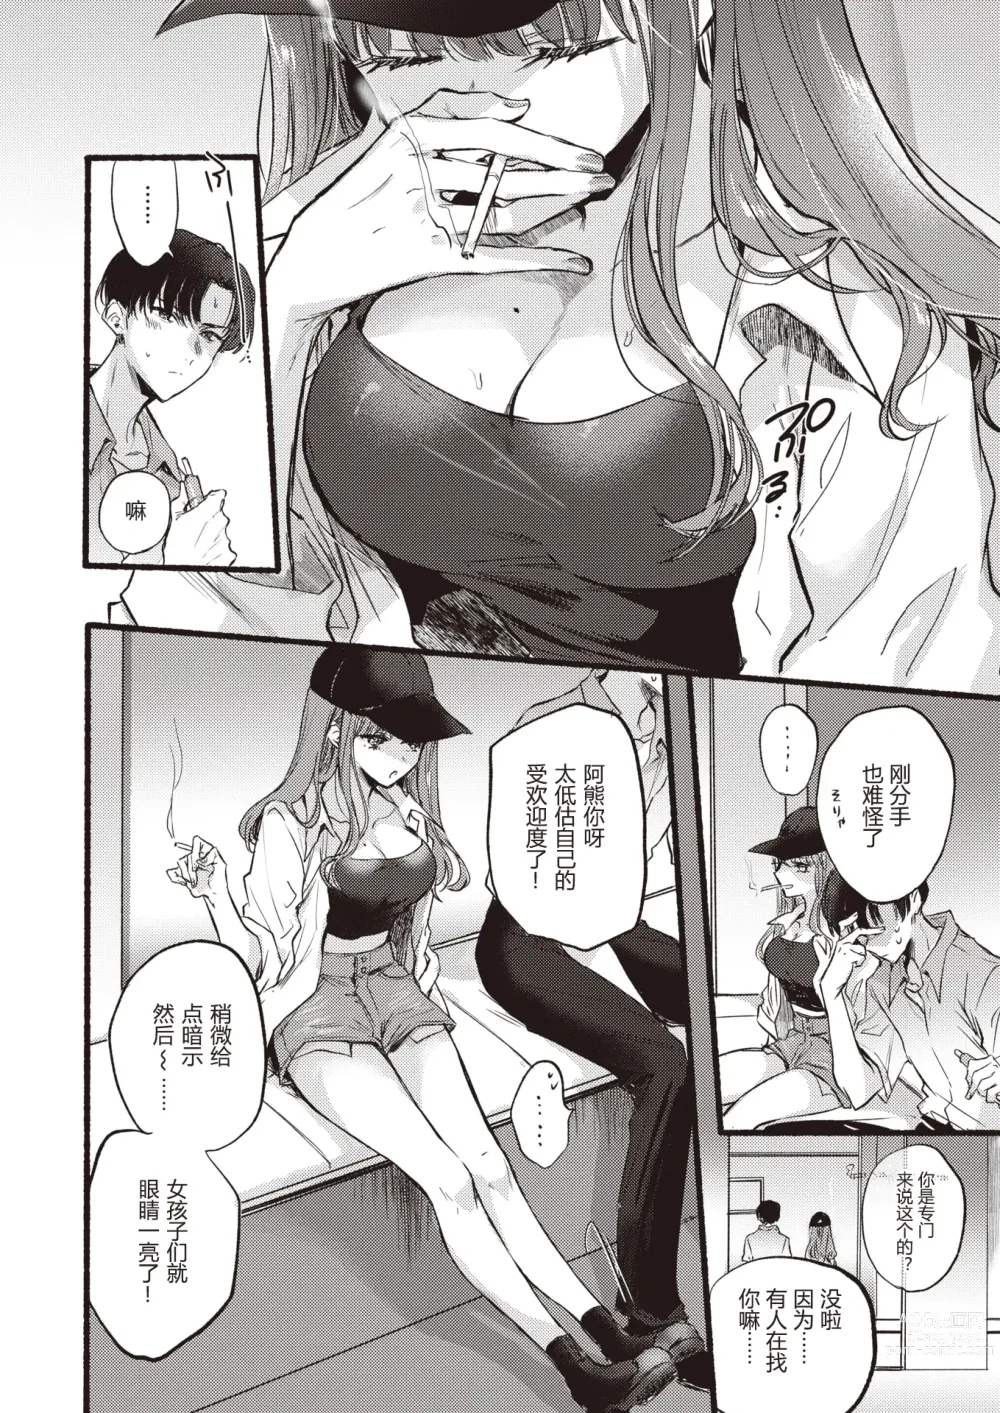 Page 3 of manga Himetomo - The secret fetish!